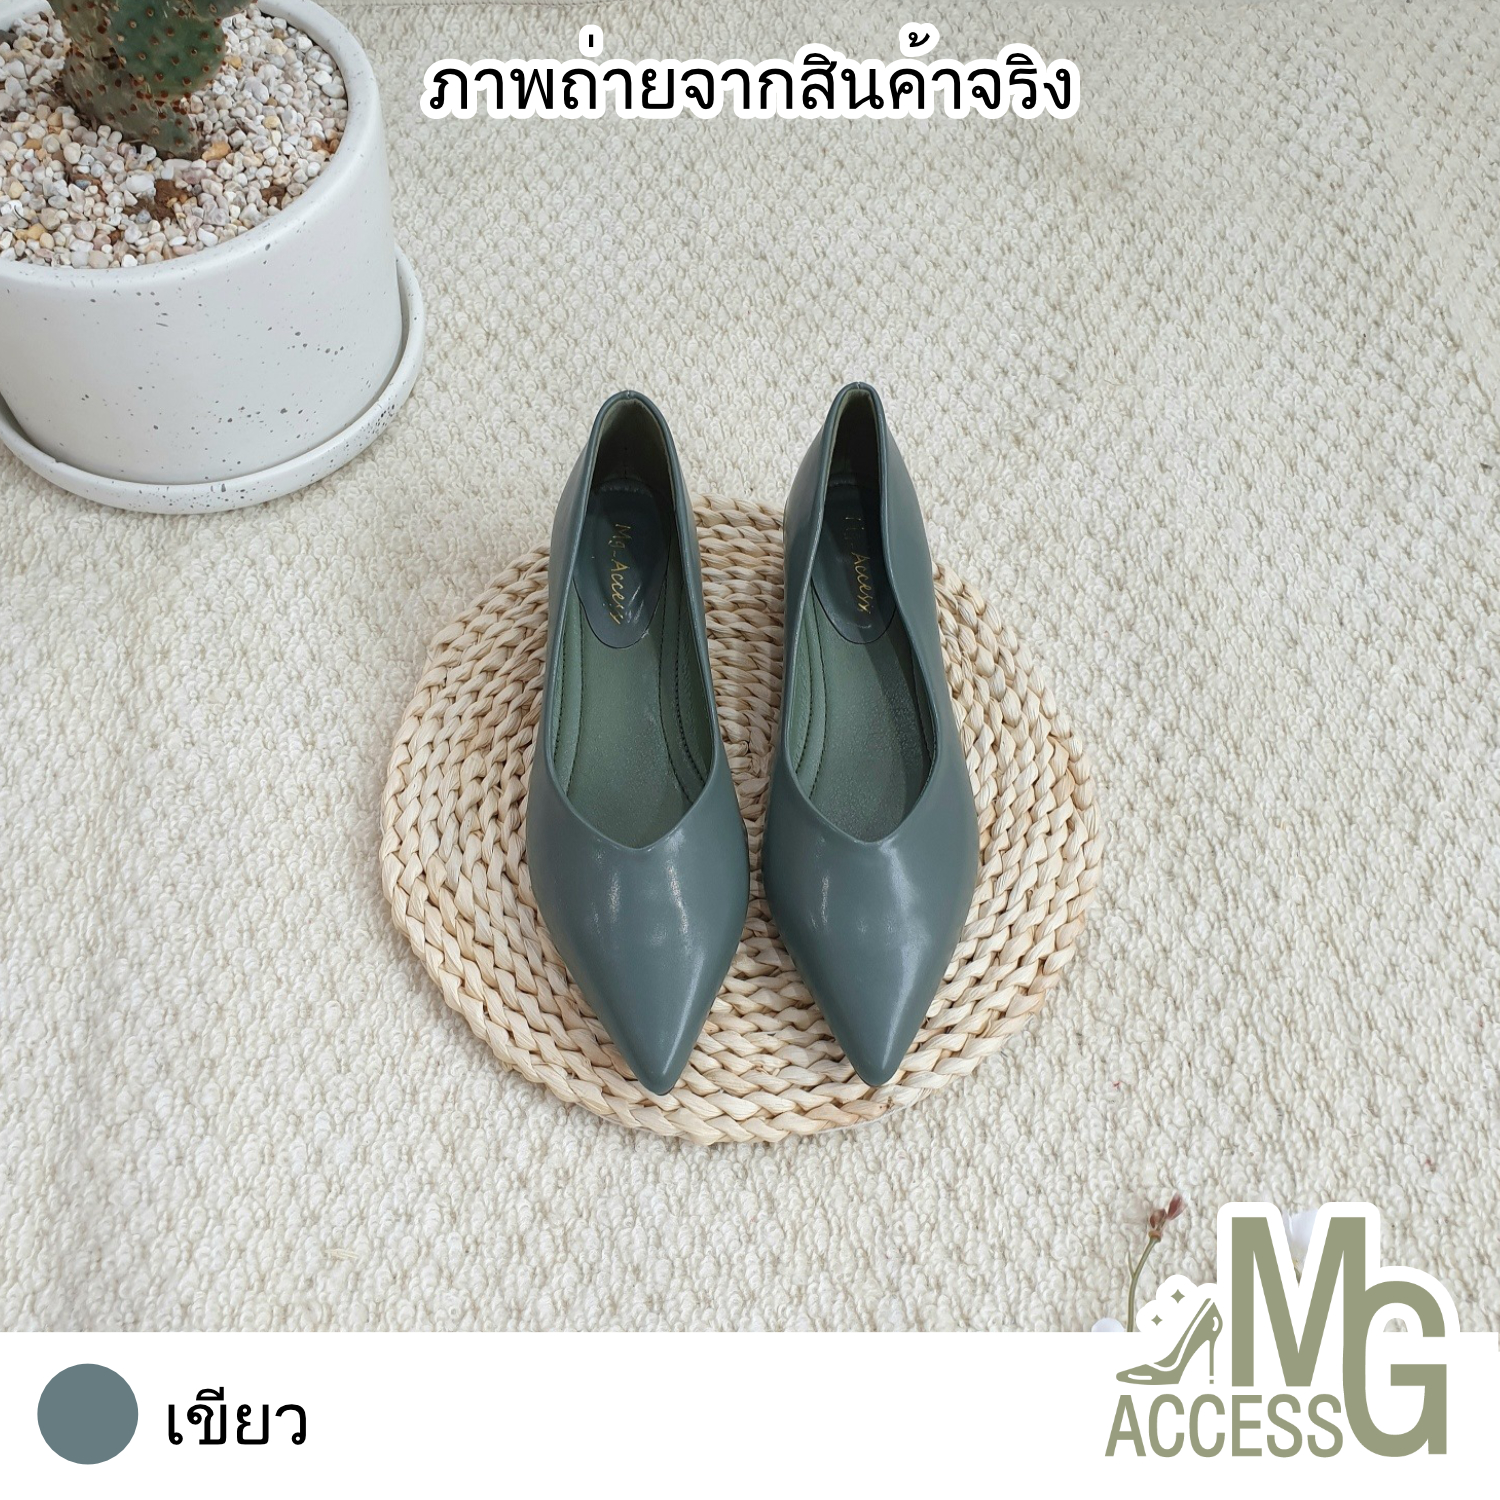 MG access สินค้าแท้ รองเท้าผู้หญิง คัชชูผู้หญิง รองเท้าส้นสูง รองเท้าออกงาน รหัสสินค้า 2928